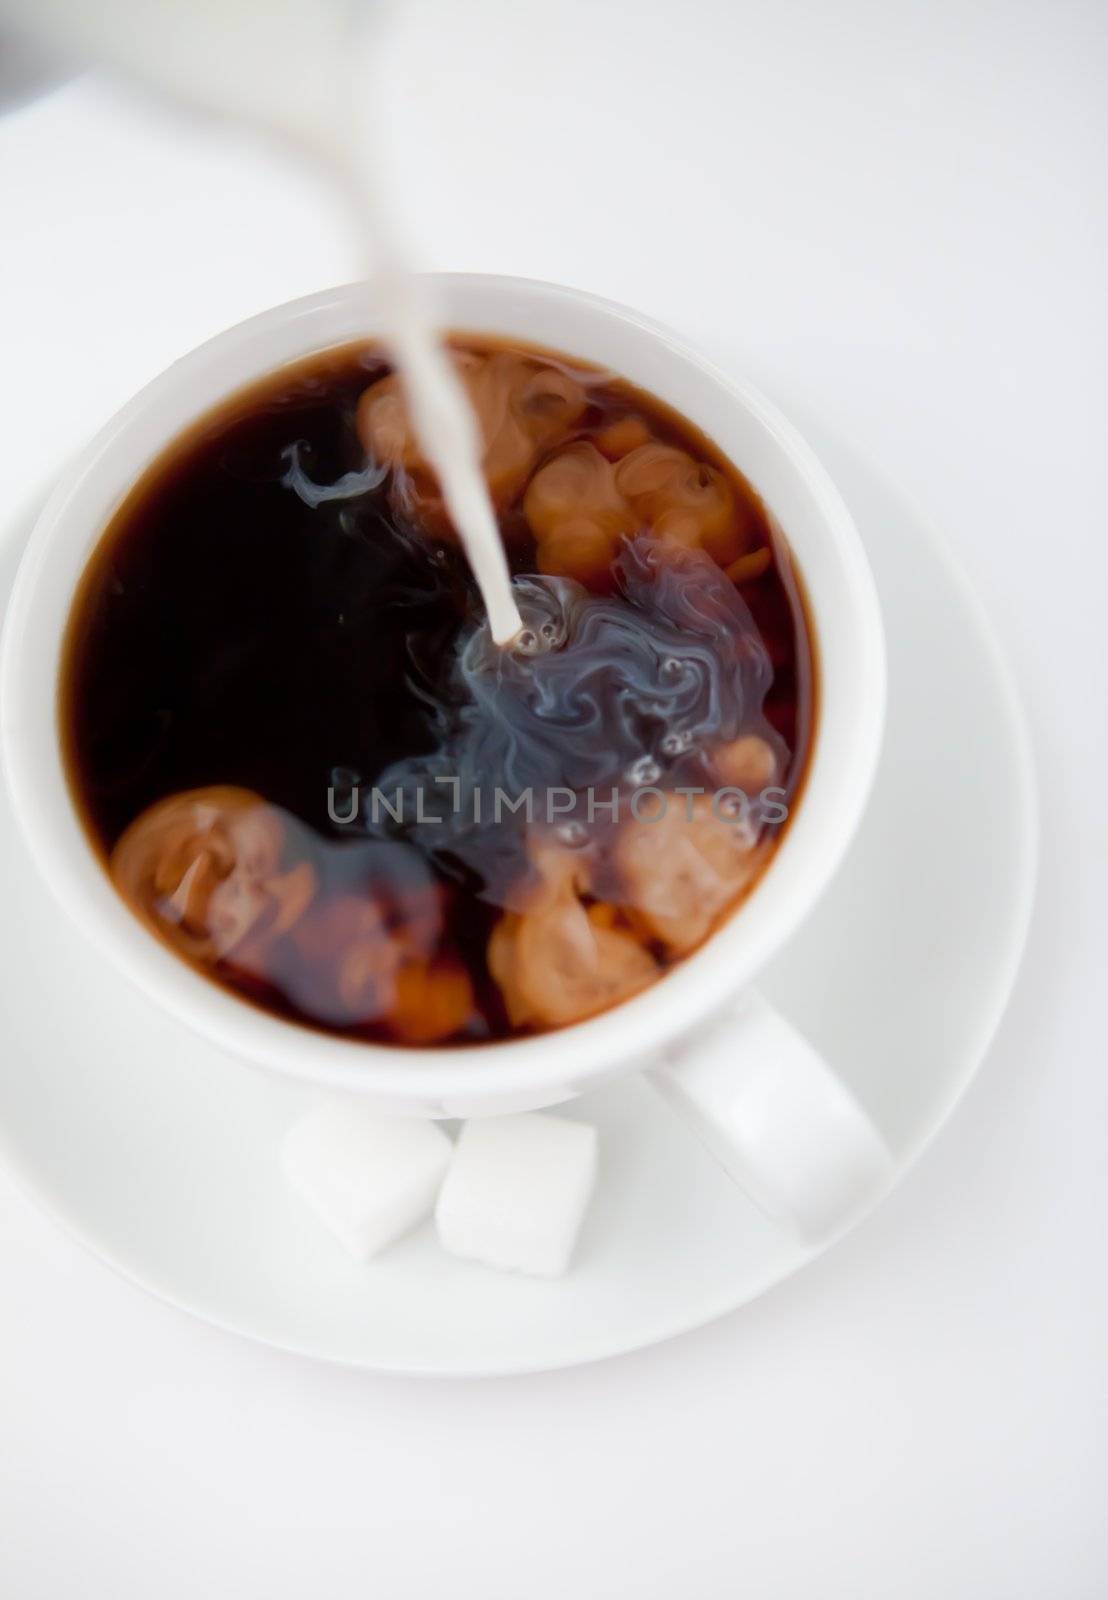 Milk and coffee by Wavebreakmedia